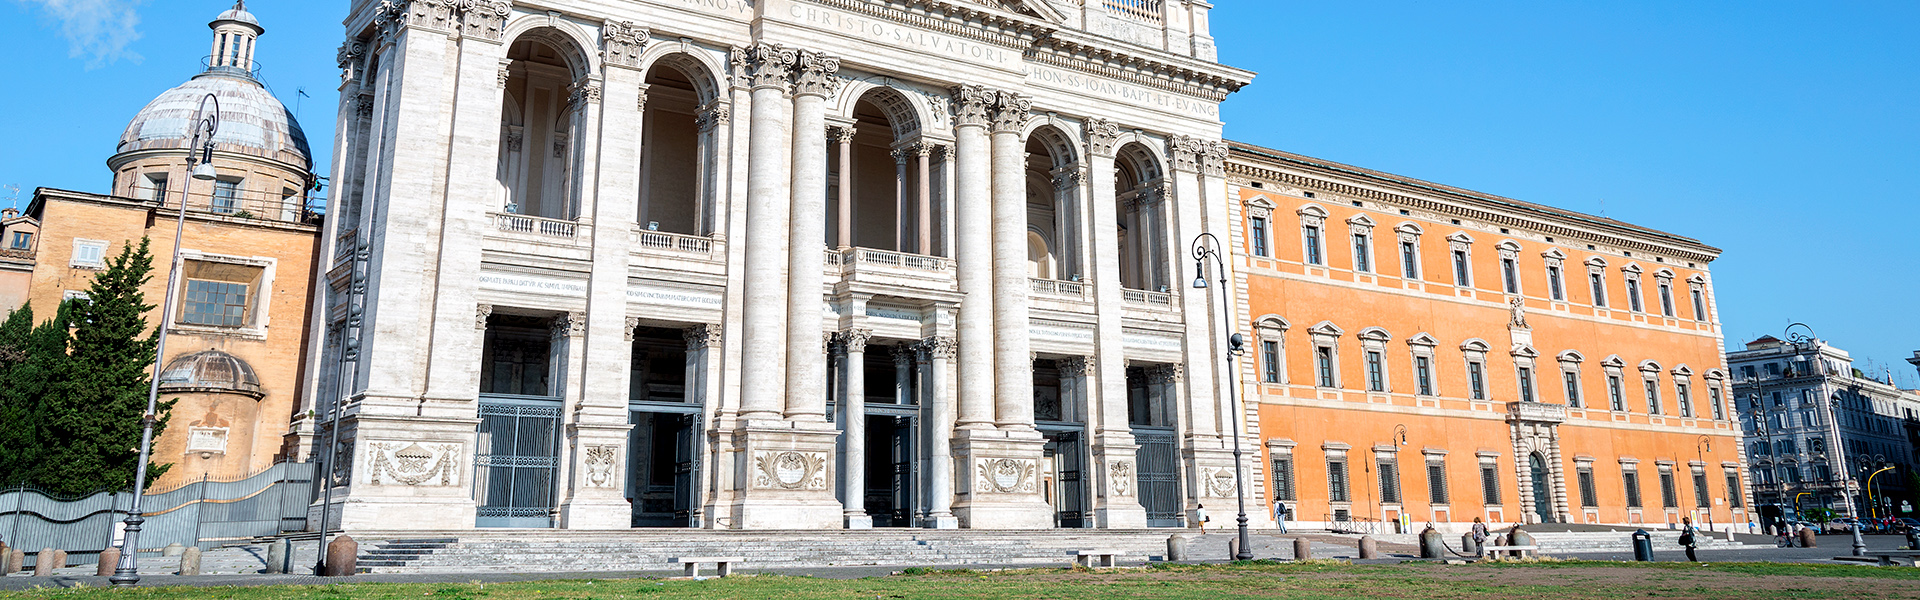 La Basilica di San Giovanni in Laterano è il punto di partenza del Cammino del Pellegrino